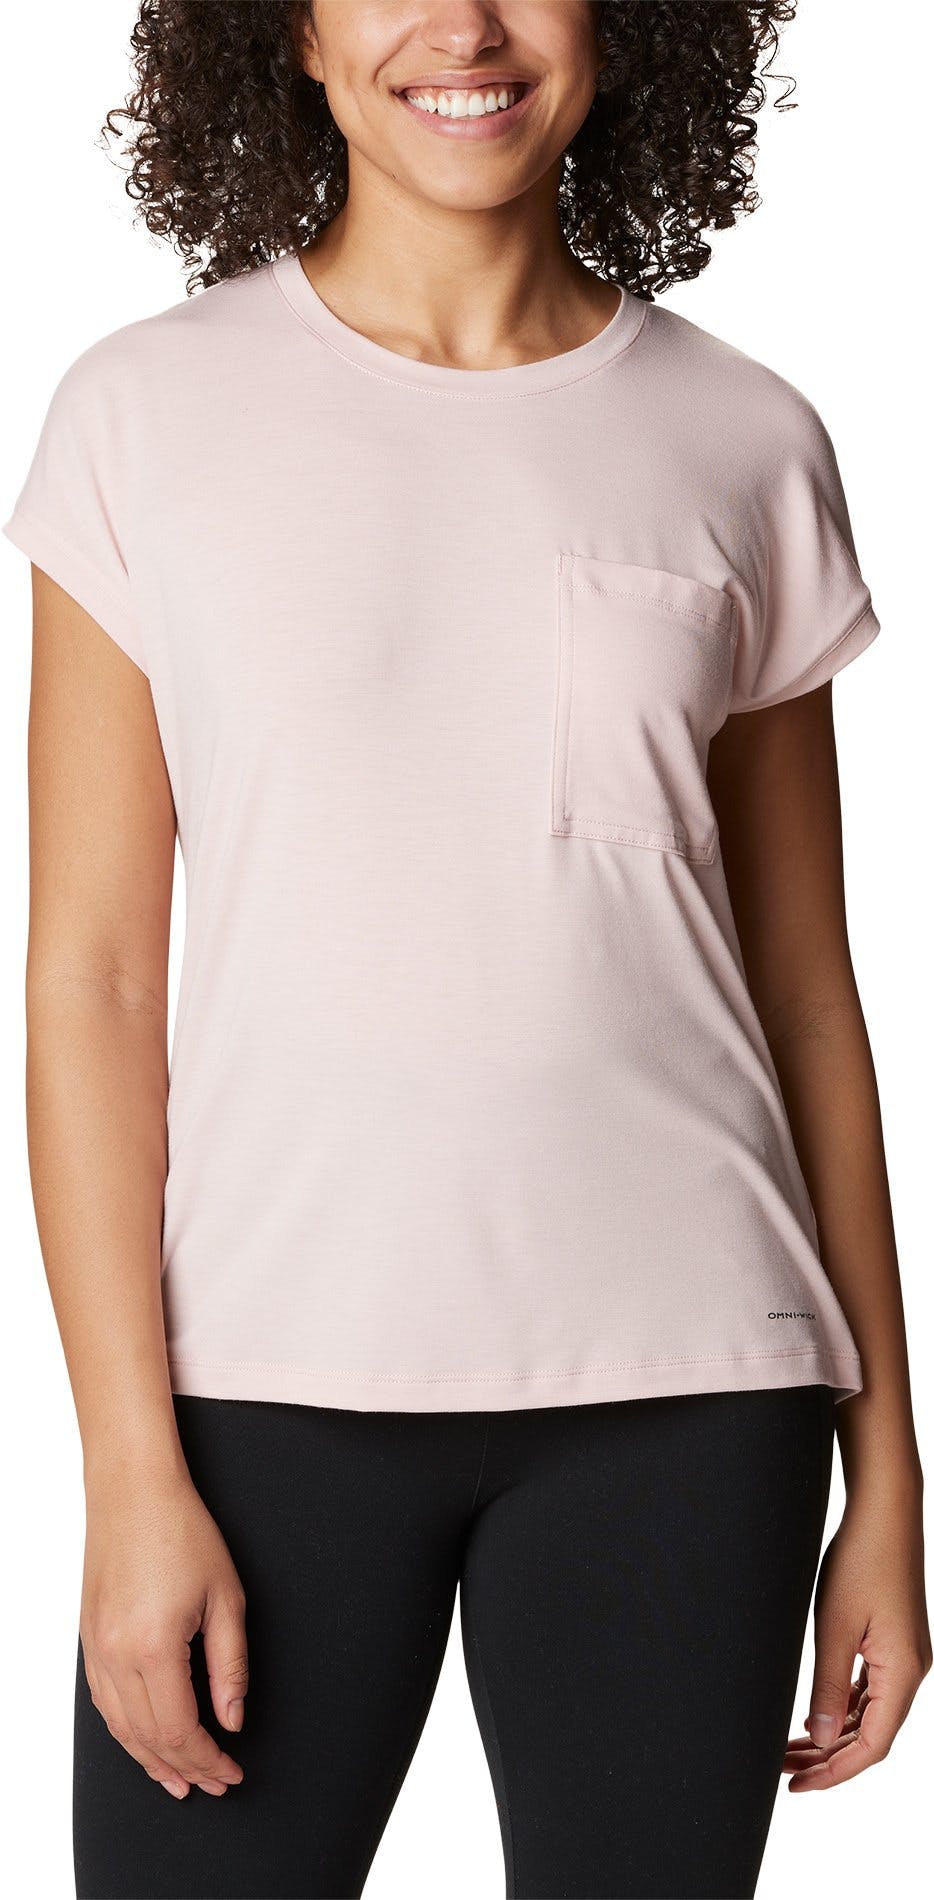 Image de produit pour T-shirt à manches courtes Boundless Trek - Femme